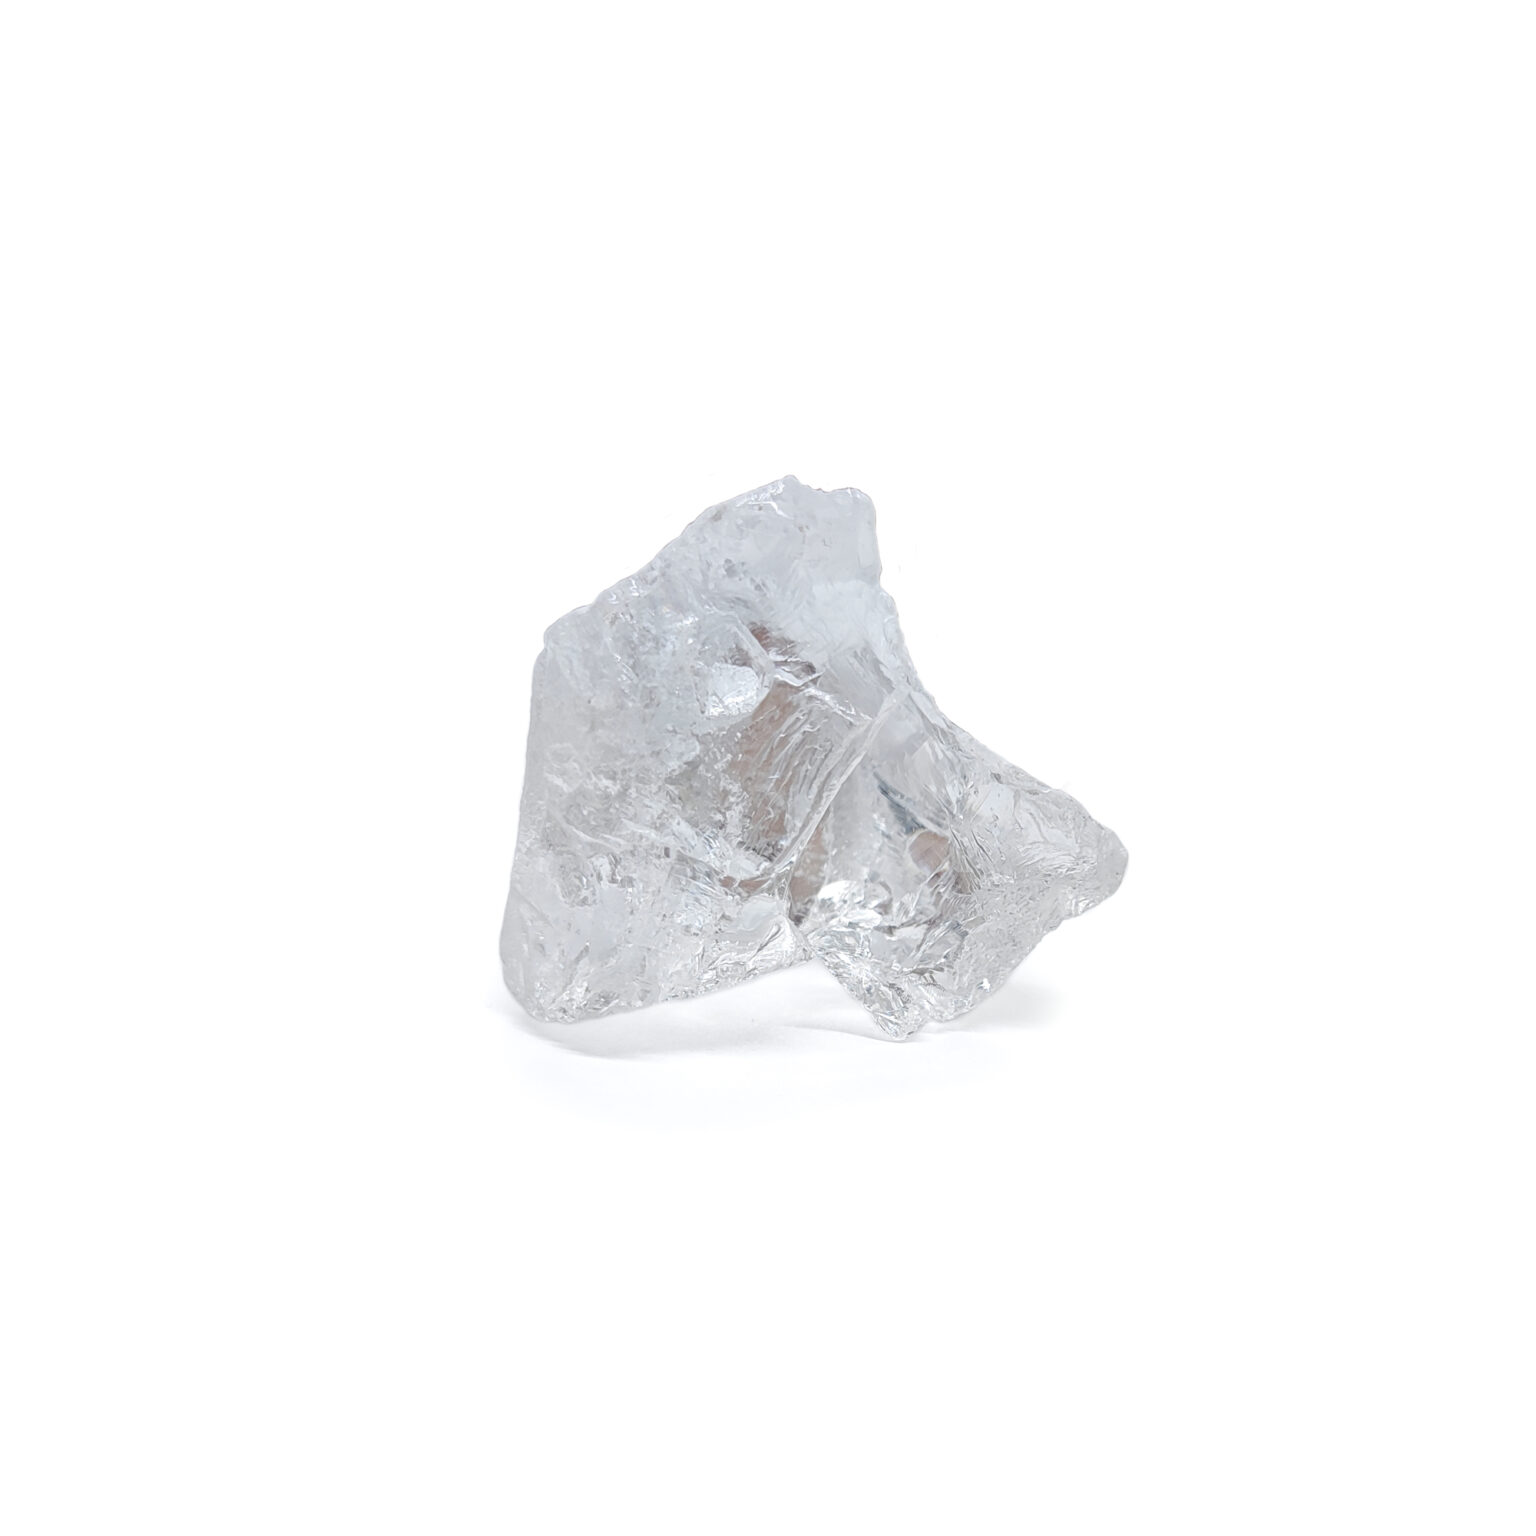 Ein kristalliner roher Bergkristall aus transparentem Quarz.